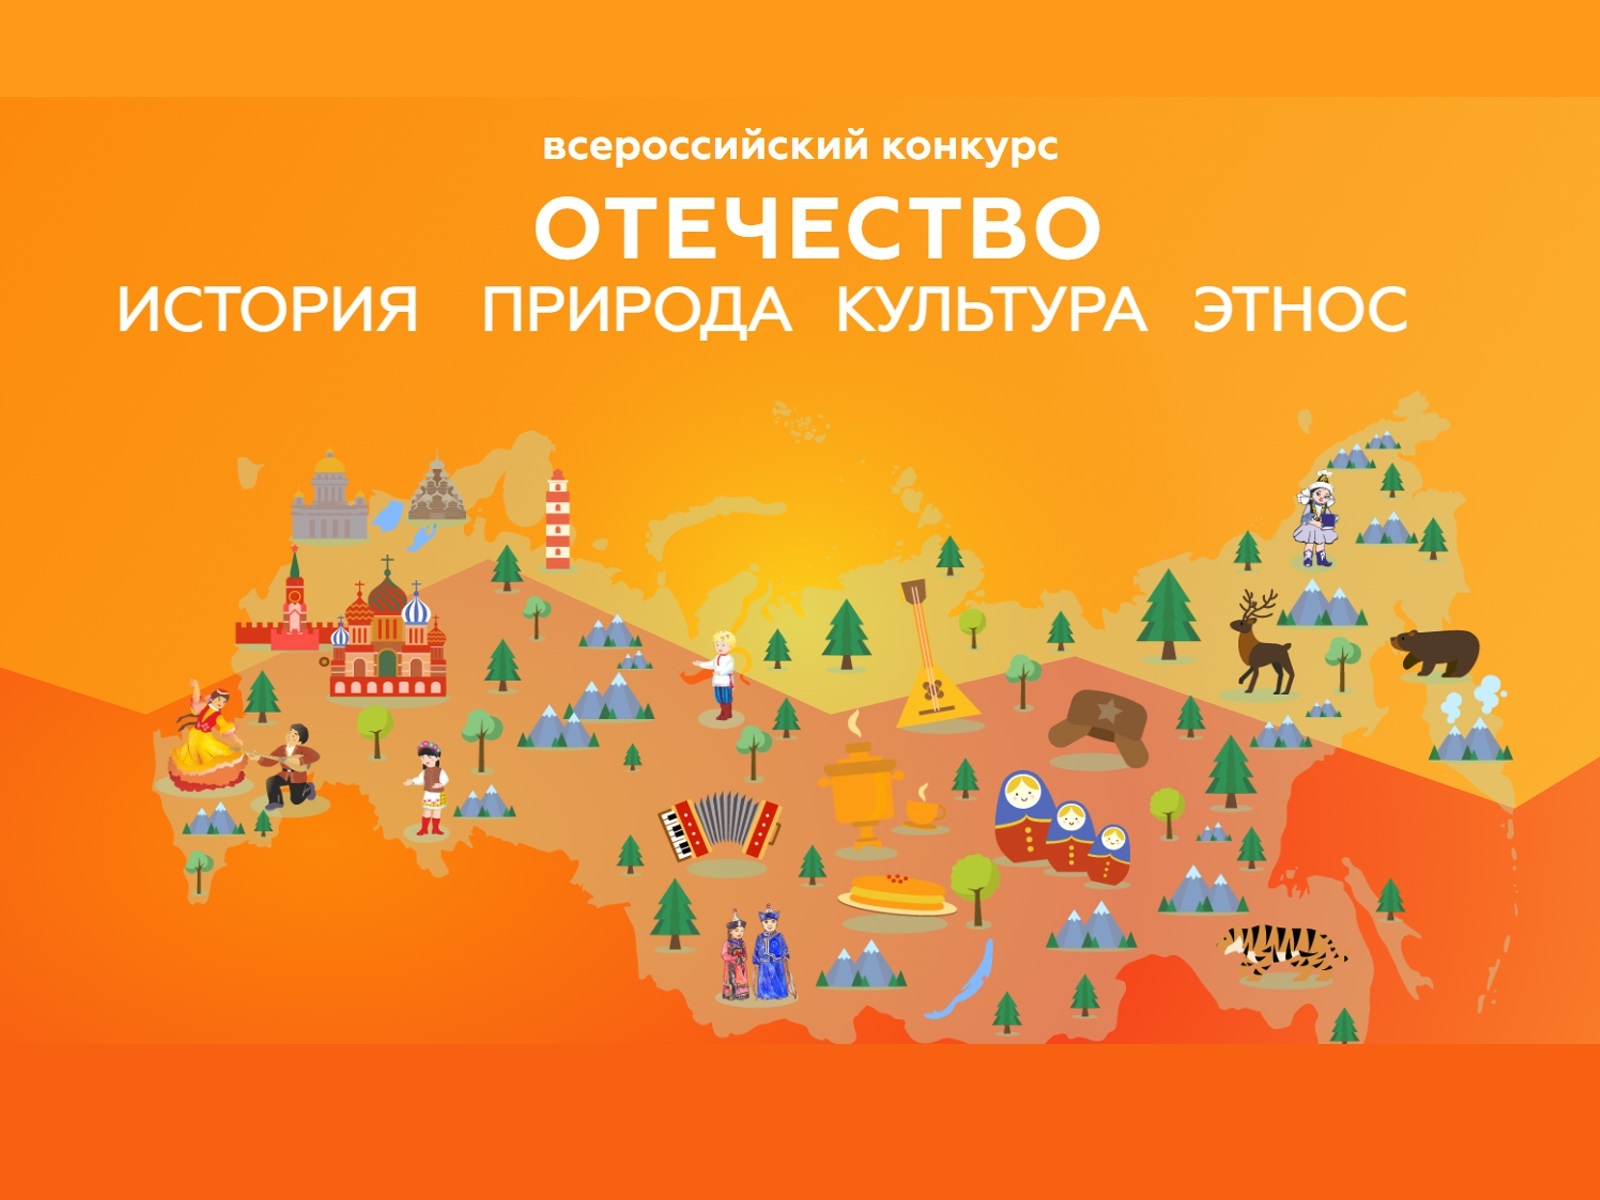 Всероссийский конкурс отечество история культура природа